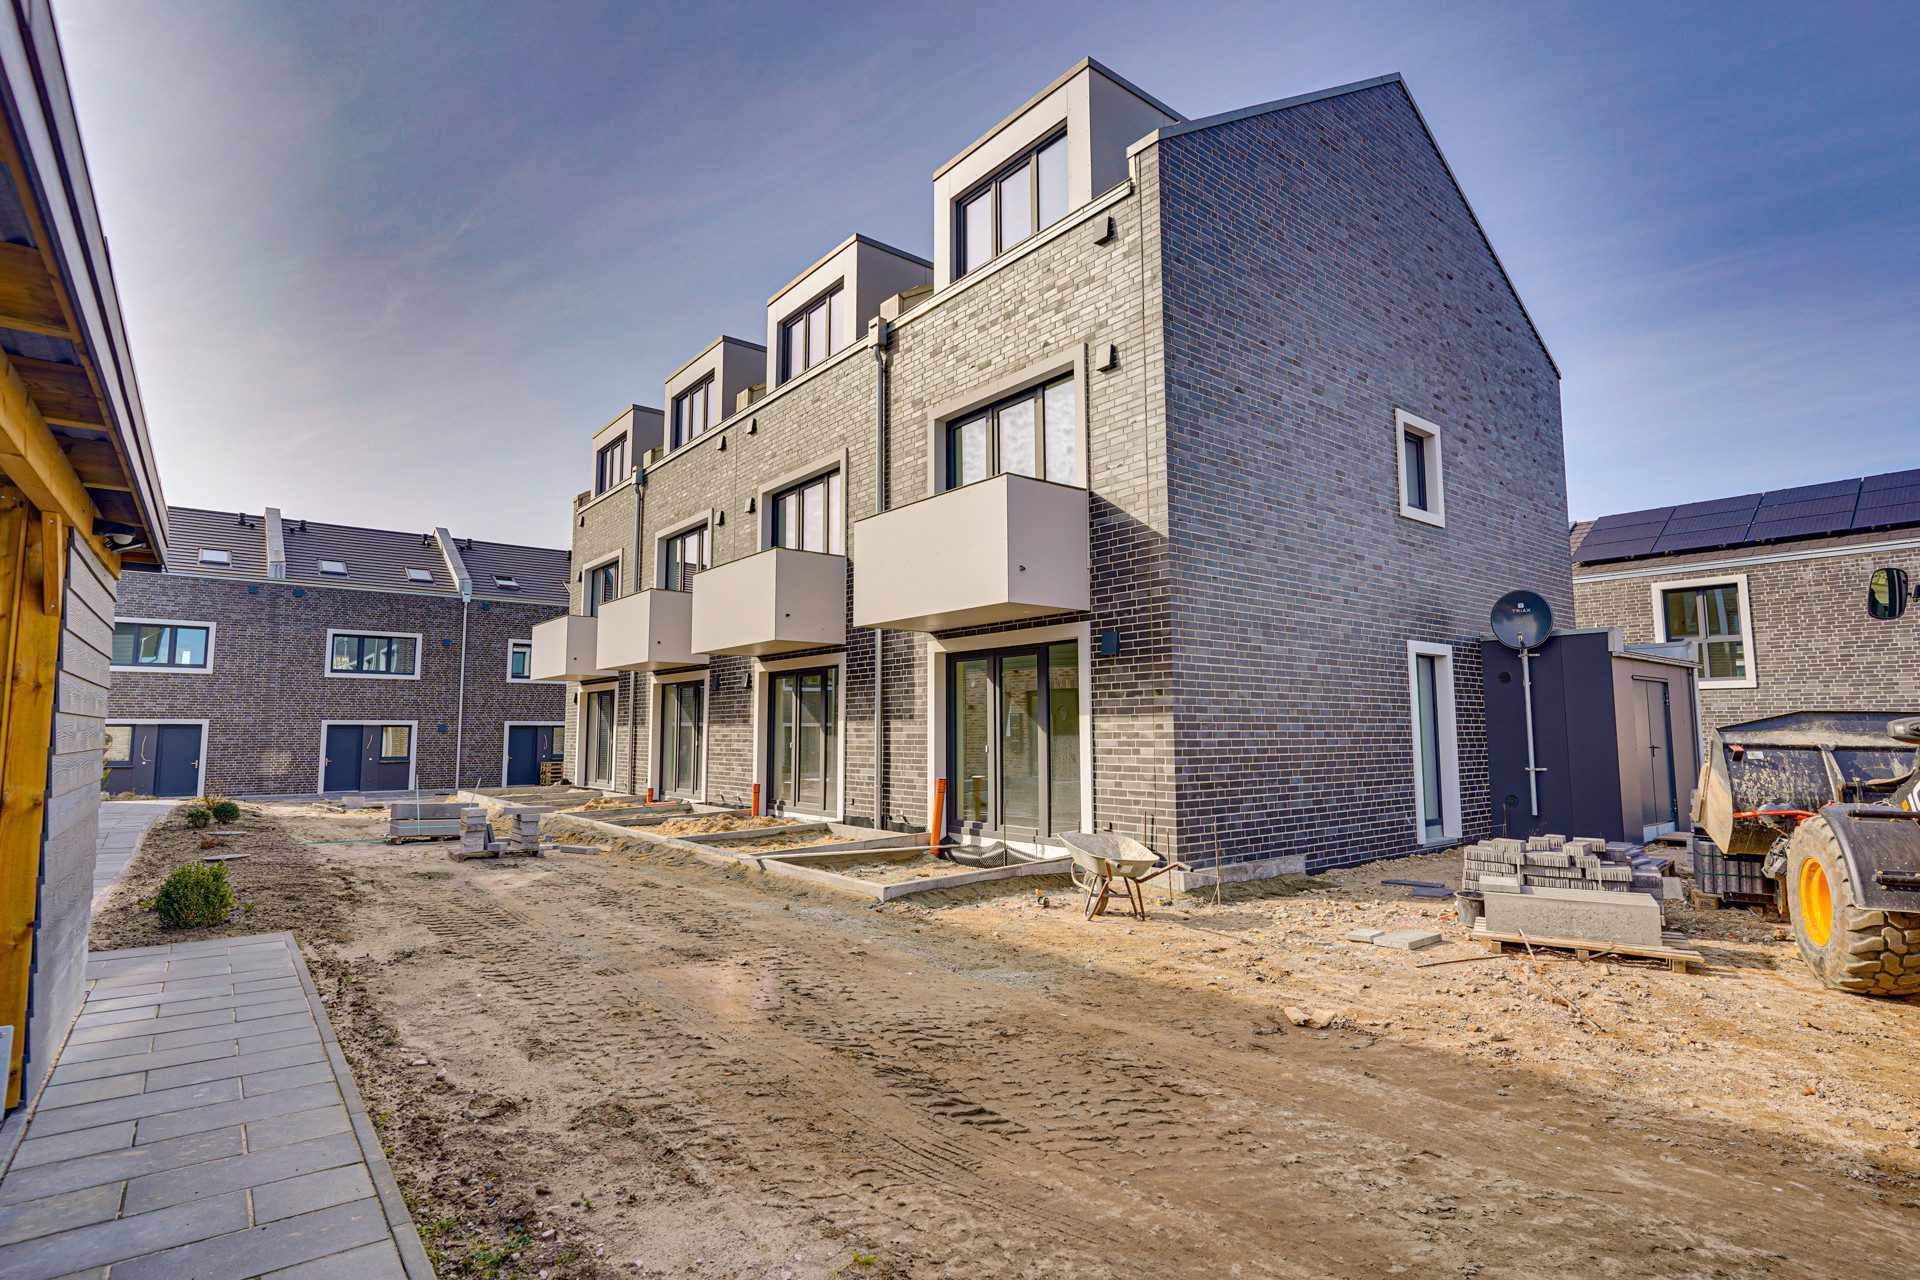 Immobilienangebot - Glücksburg - Alle - Komfort Reihenhaus! 4,5 Zi.,103 m² Wfl., Balkon & Terrasse, 2 Bäder, Stellplz., gehobene Ausstatt.!